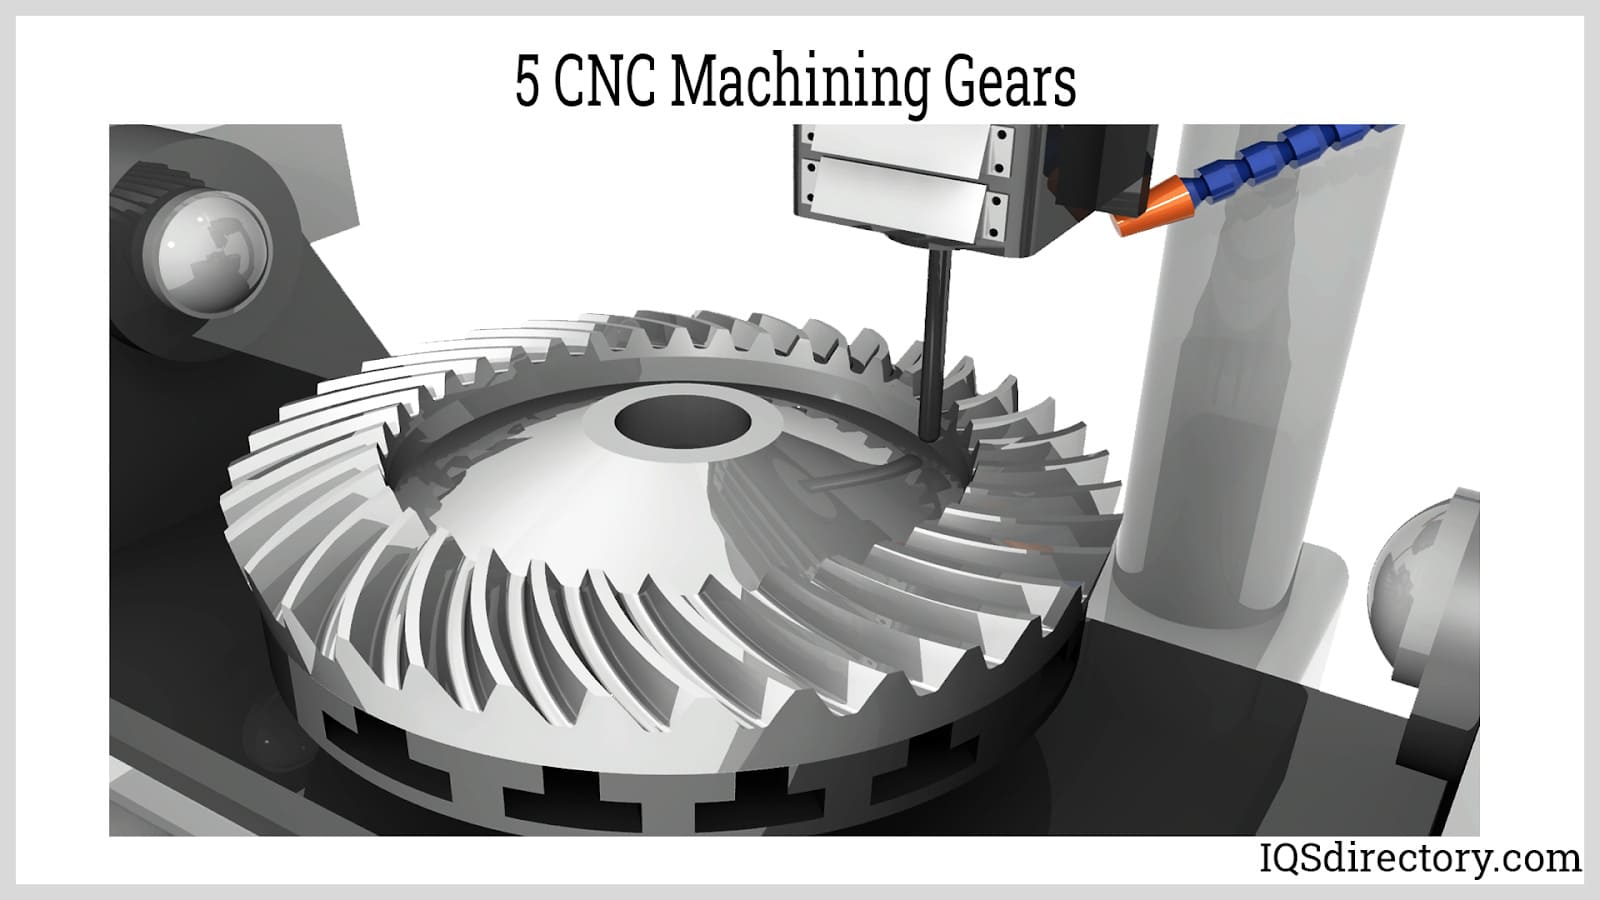 5 CNC Machining Gears